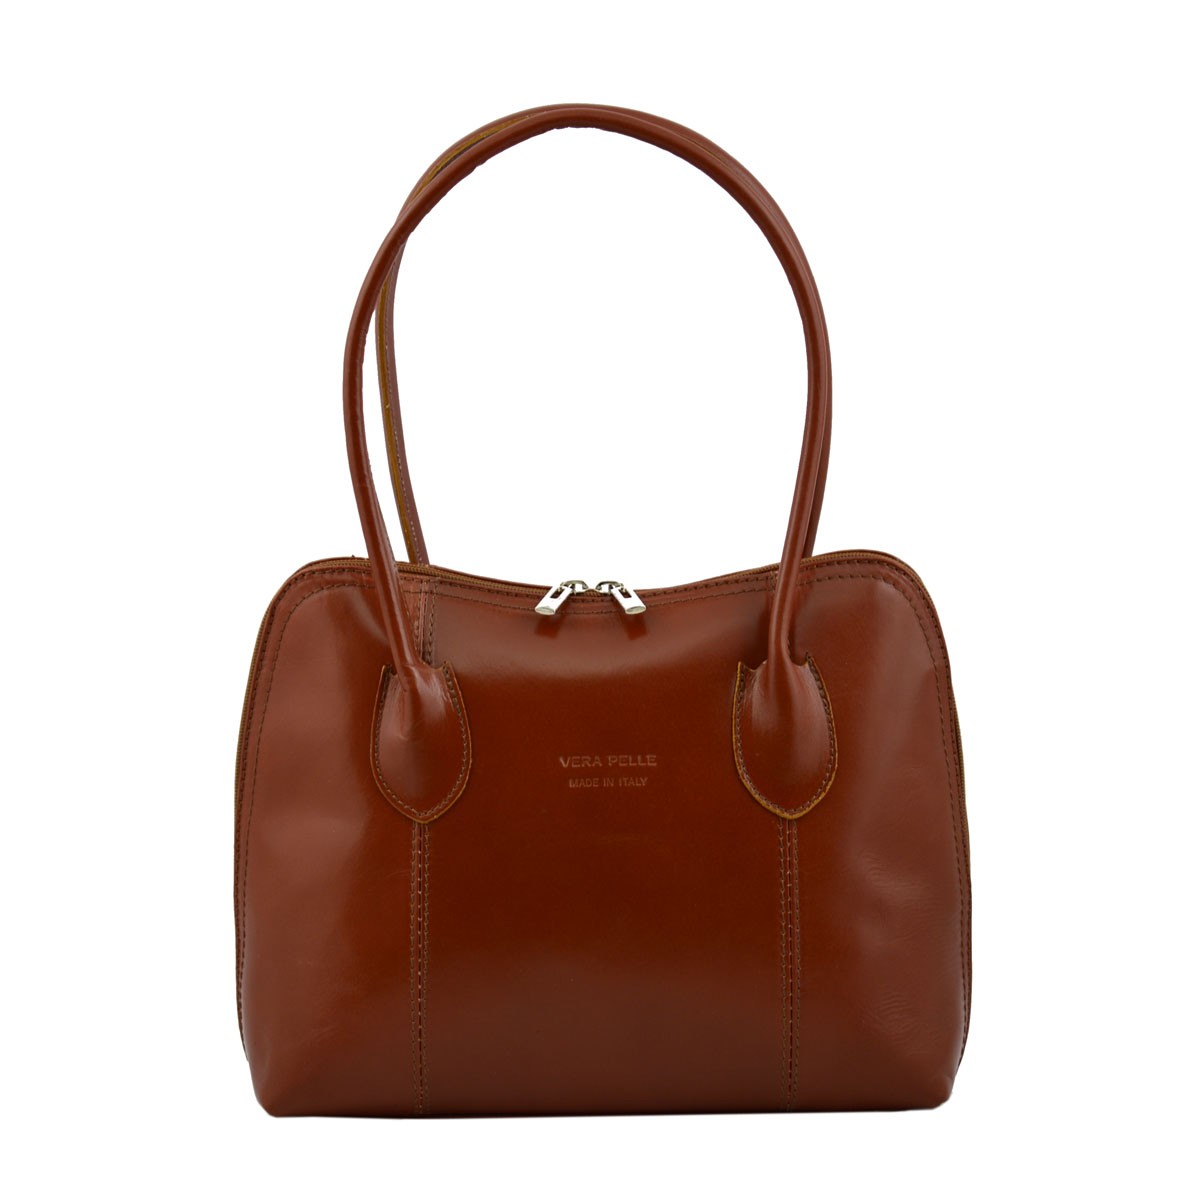 Rodéo pégase leather bag charm Hermès Multicolour in Leather